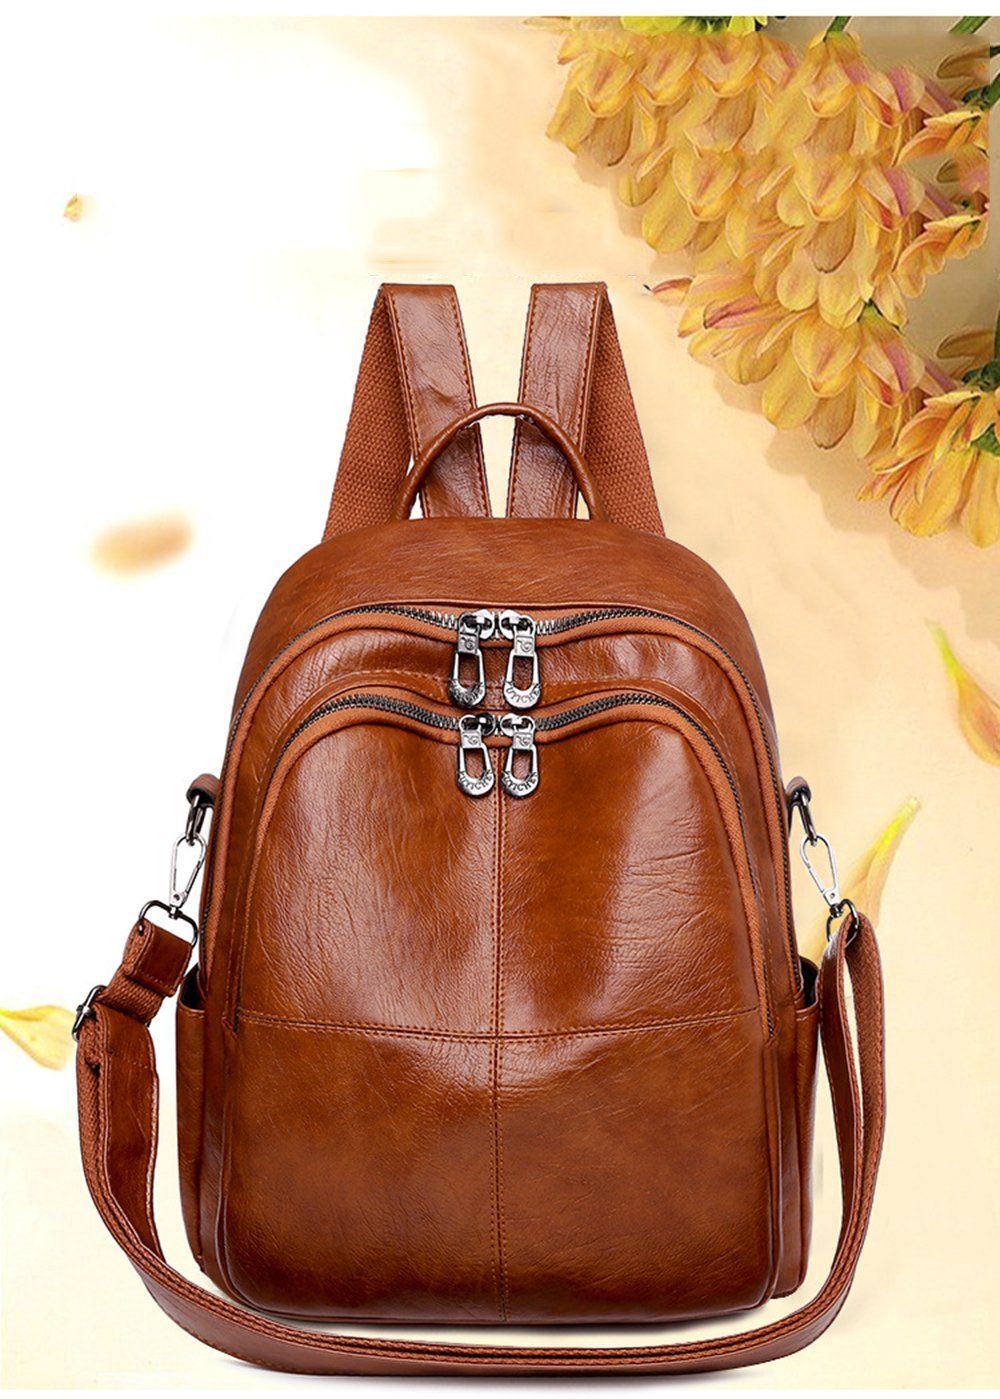 Leway Daypack »Mini Rucksack Damen Klein Echtes Leder Rucksäcke Mode Uni  Daypack Schultertasche« online kaufen | OTTO